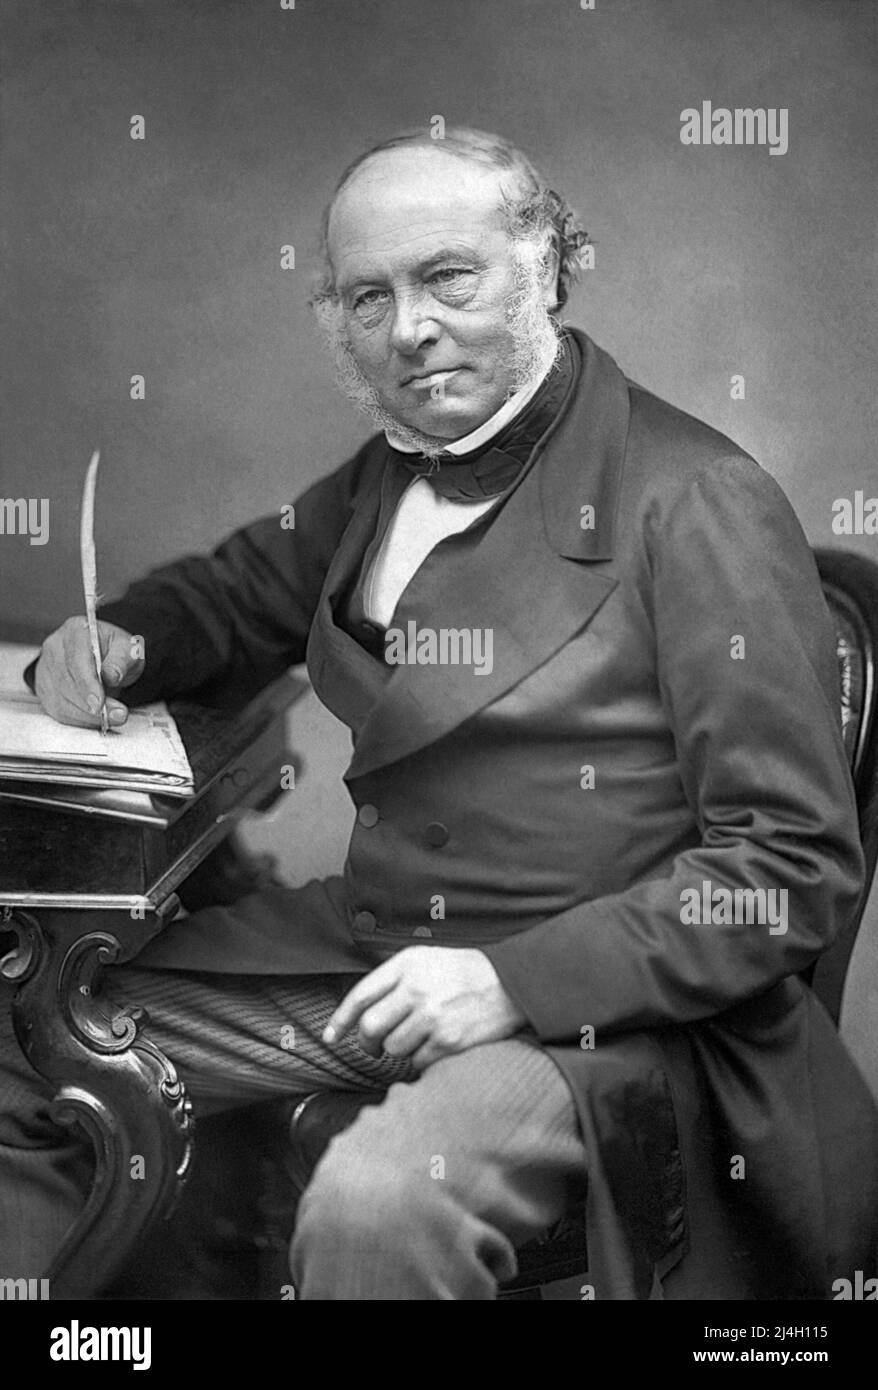 Sir Rowland Hill, (1795 – 1879) insegnante di inglese, inventore e riformatore sociale. Gli viene accreditato di aver dato origine ai concetti di base del moderno servizio postale, compresa l'invenzione del francobollo. Foto Stock